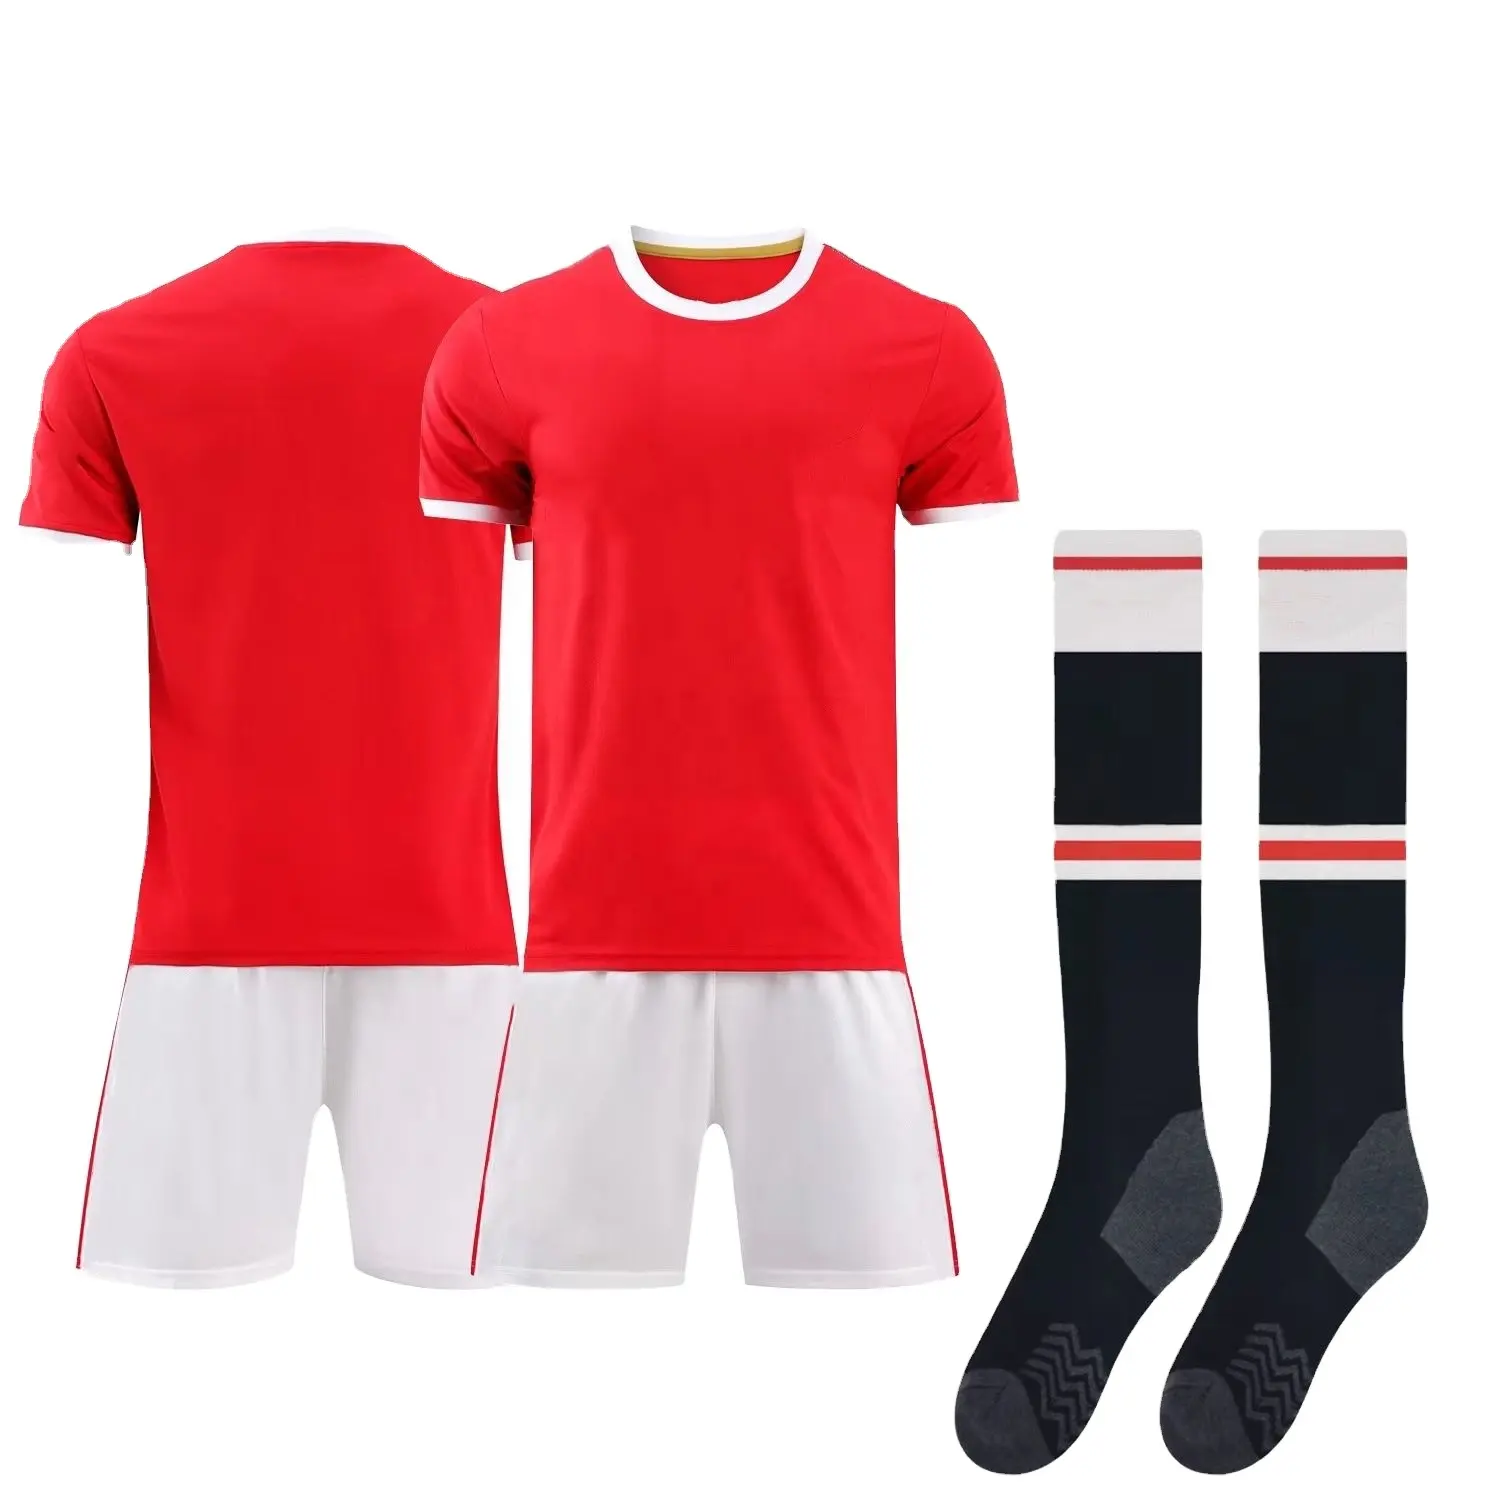 เสื้อฟุตบอล,เสื้อฟุตบอลทีมเยือนยูไนเต็ดซีซั่นใหม่ปี2021